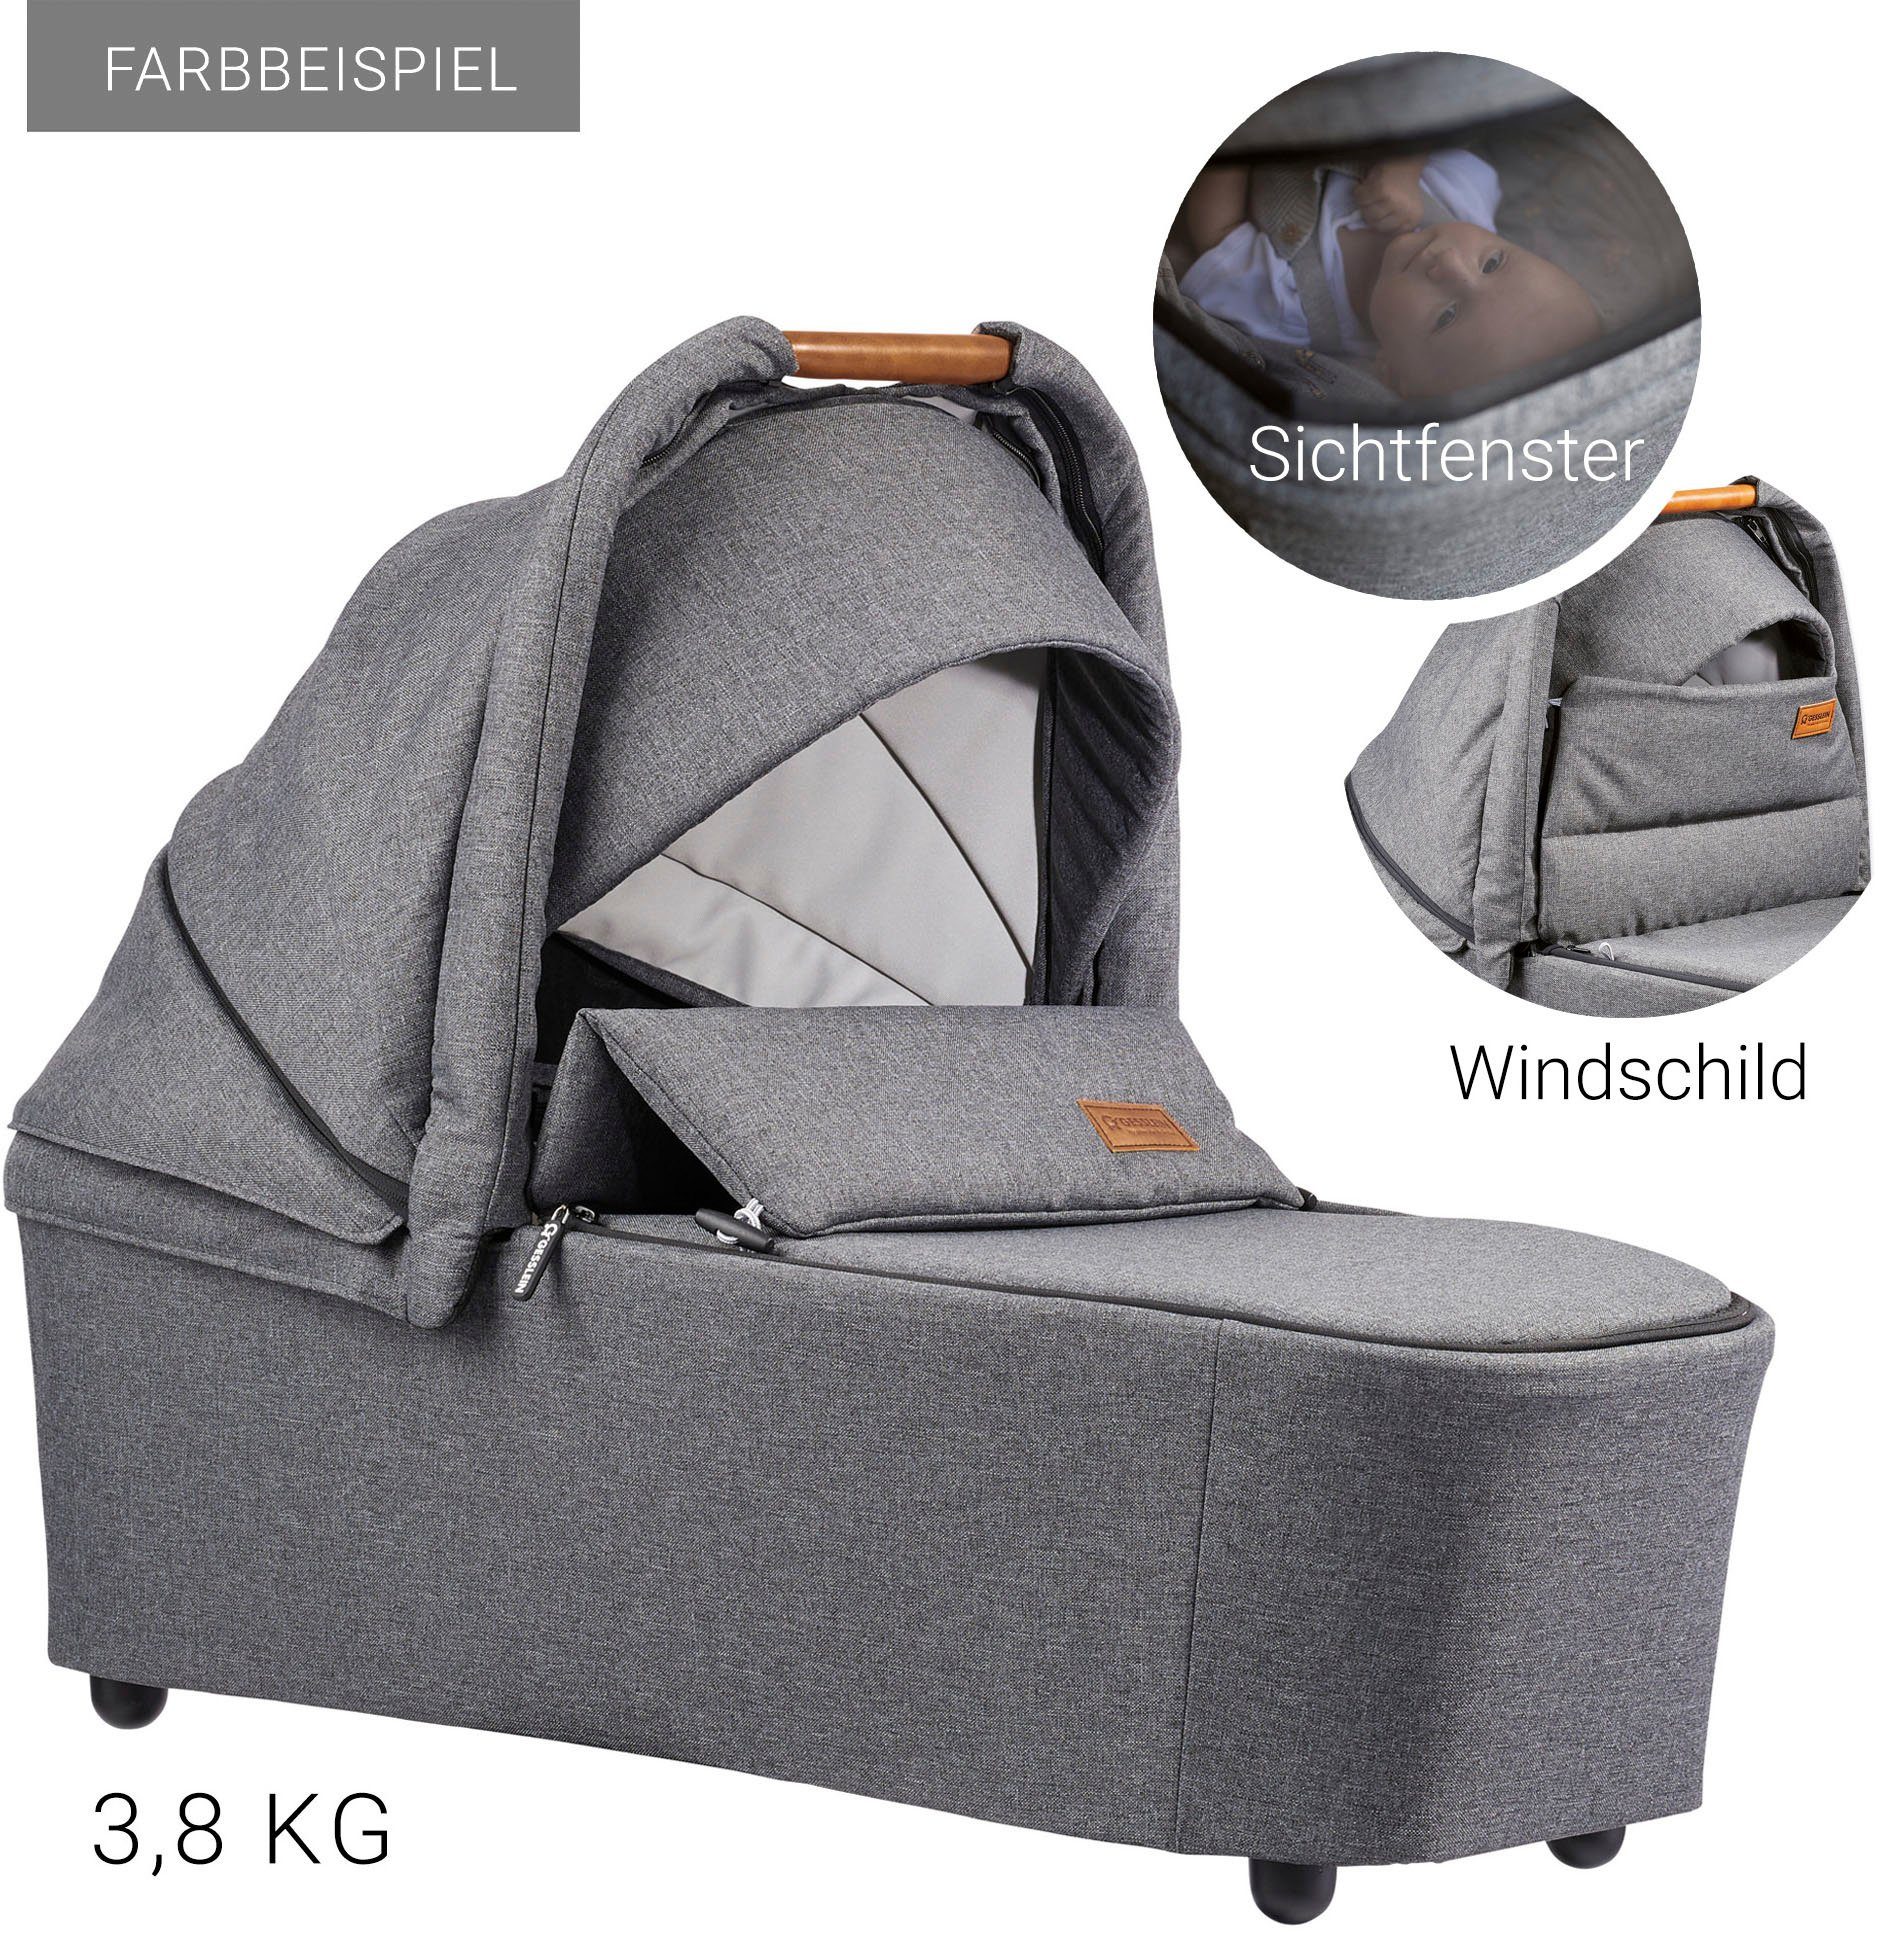 Gesslein Kombi-Kinderwagen FX4 Soft+ mit schiefergrau, Babyschalenadapter C3 mit schwarz/cognac, Aufsatz und Life, Babywanne